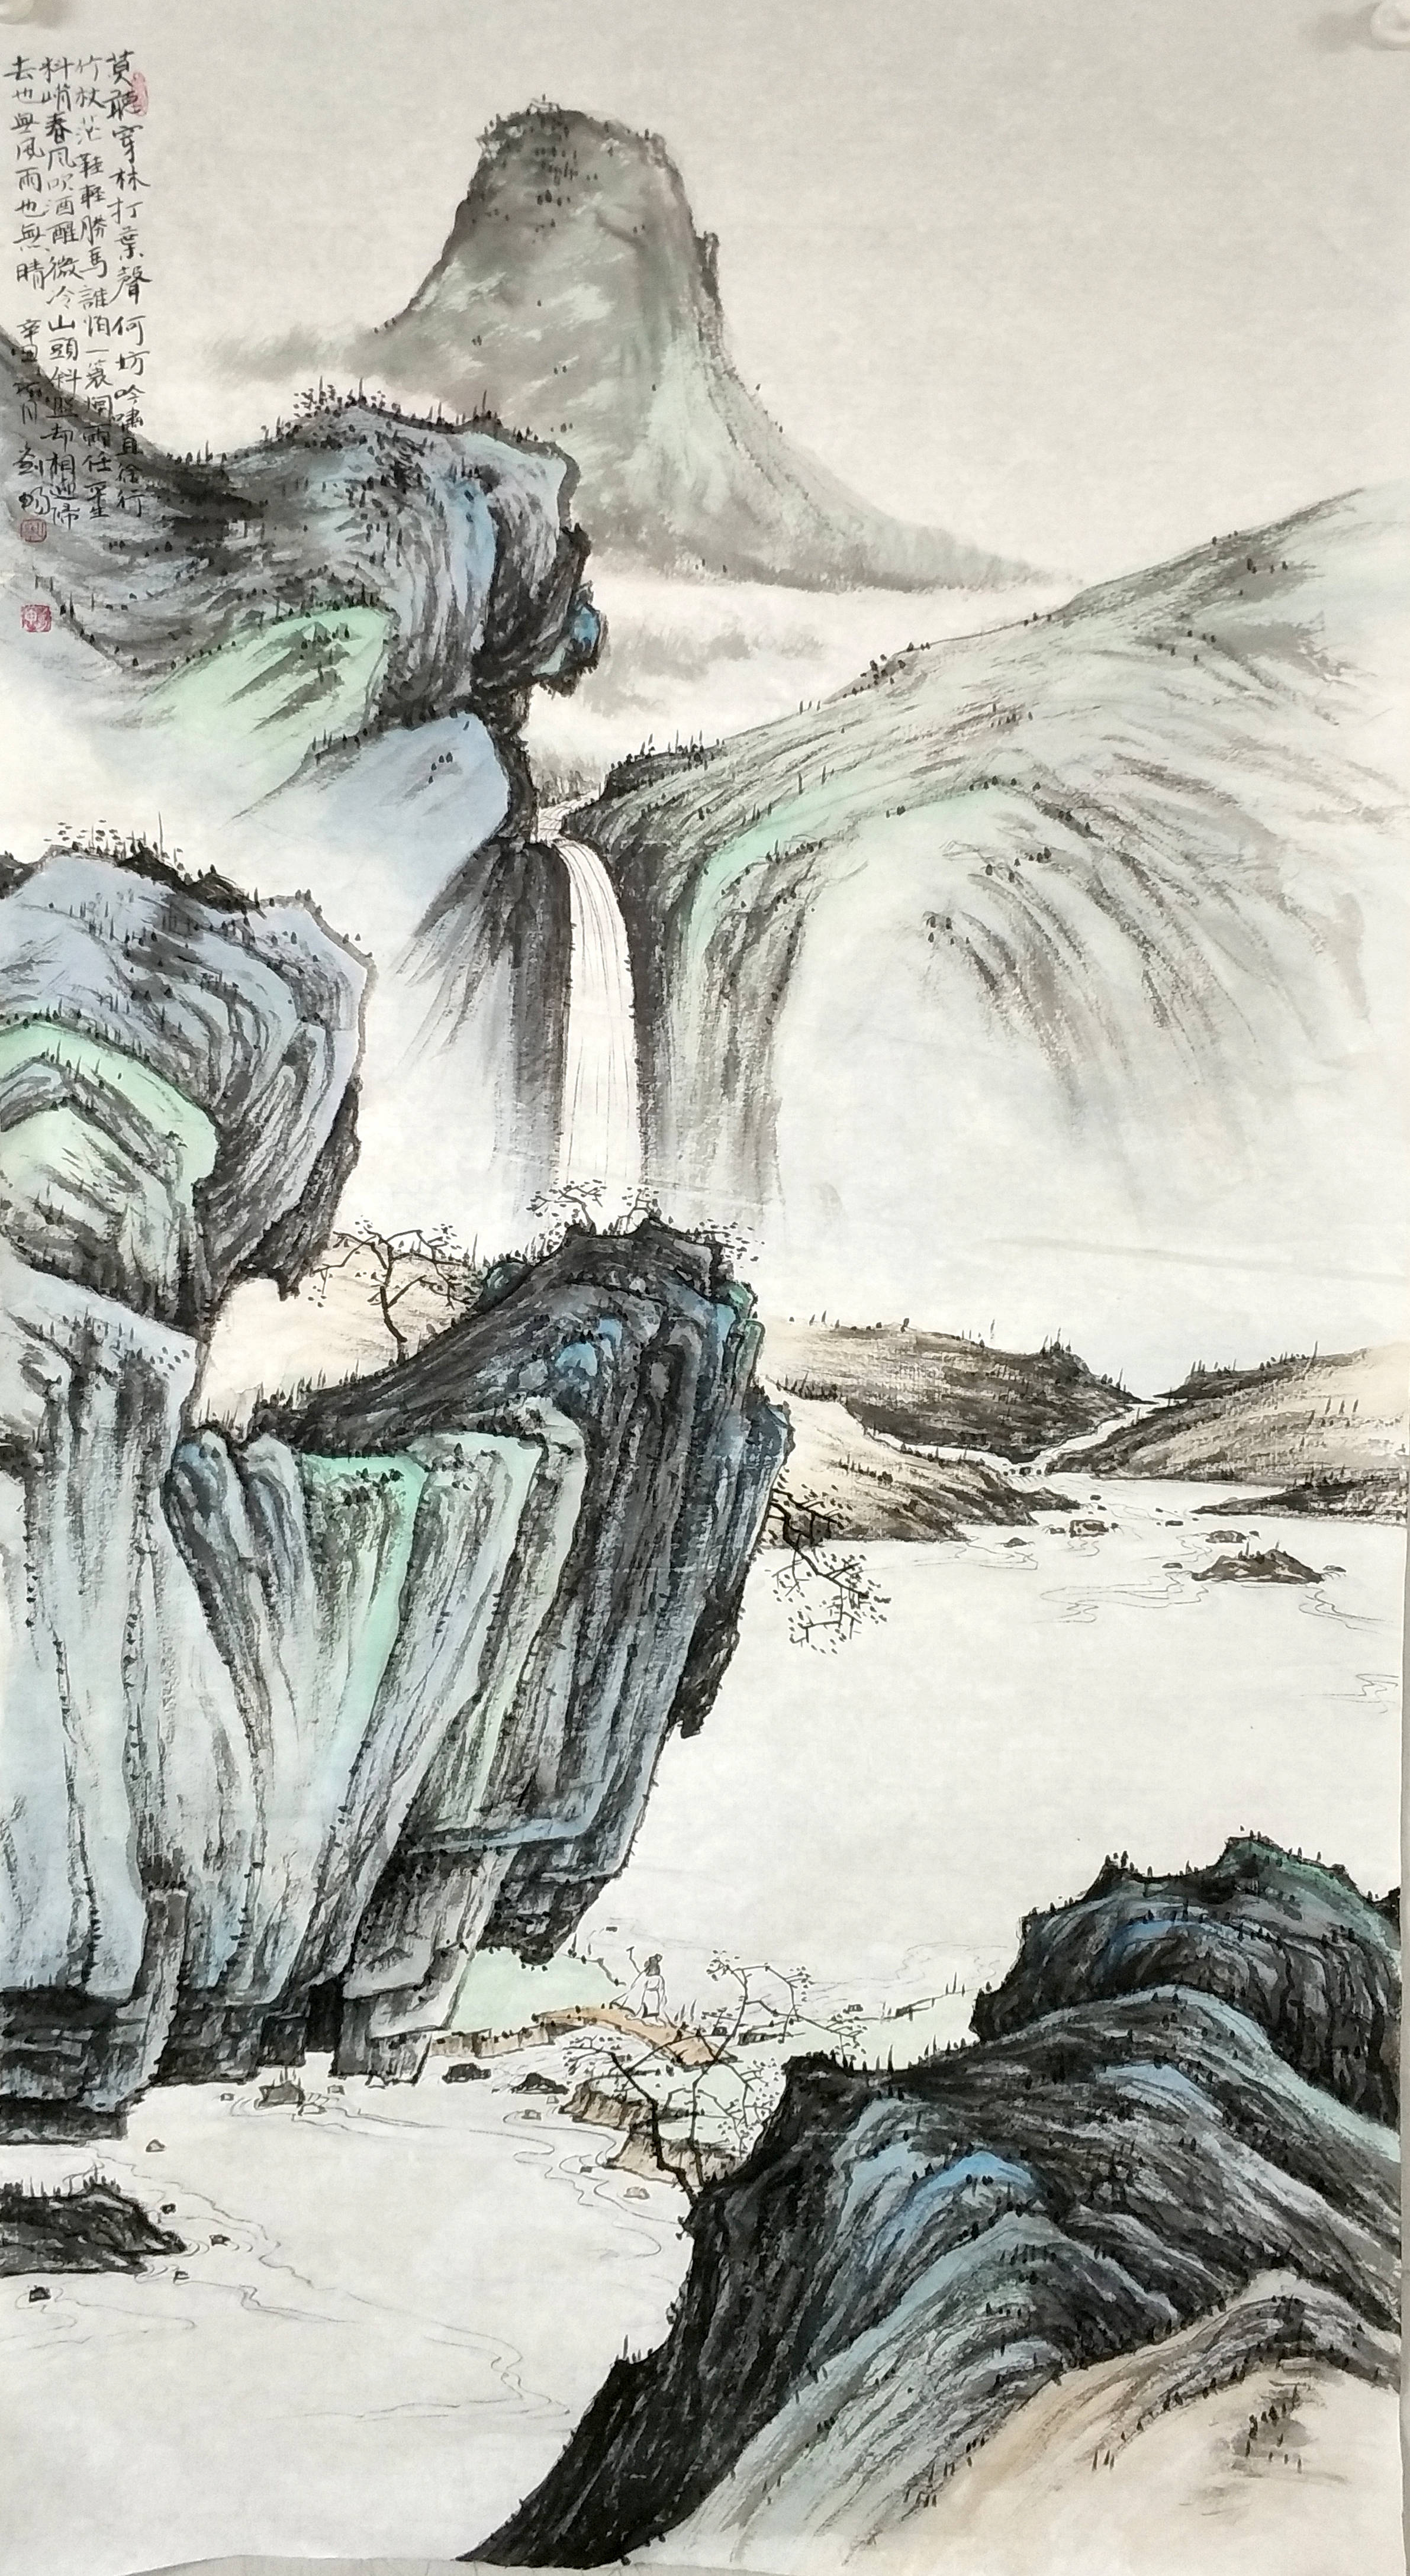 刘元乙:以笔墨展现祖国壮丽河山,弘扬中国传统文化